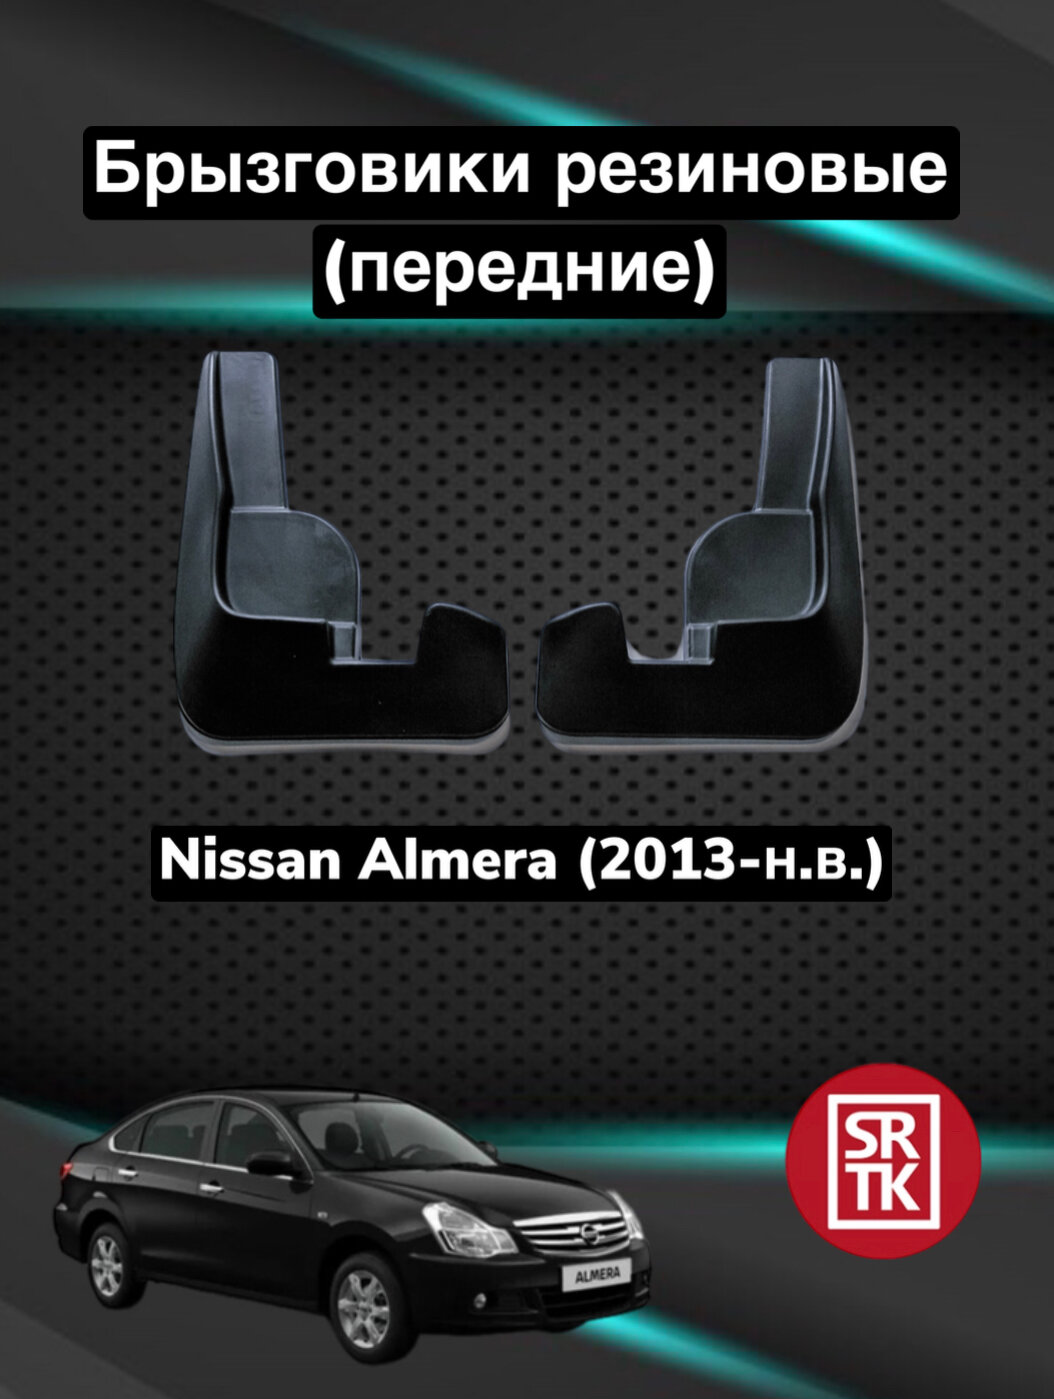 Брызговики передние SRTK на Nissan Almera 2012-2018